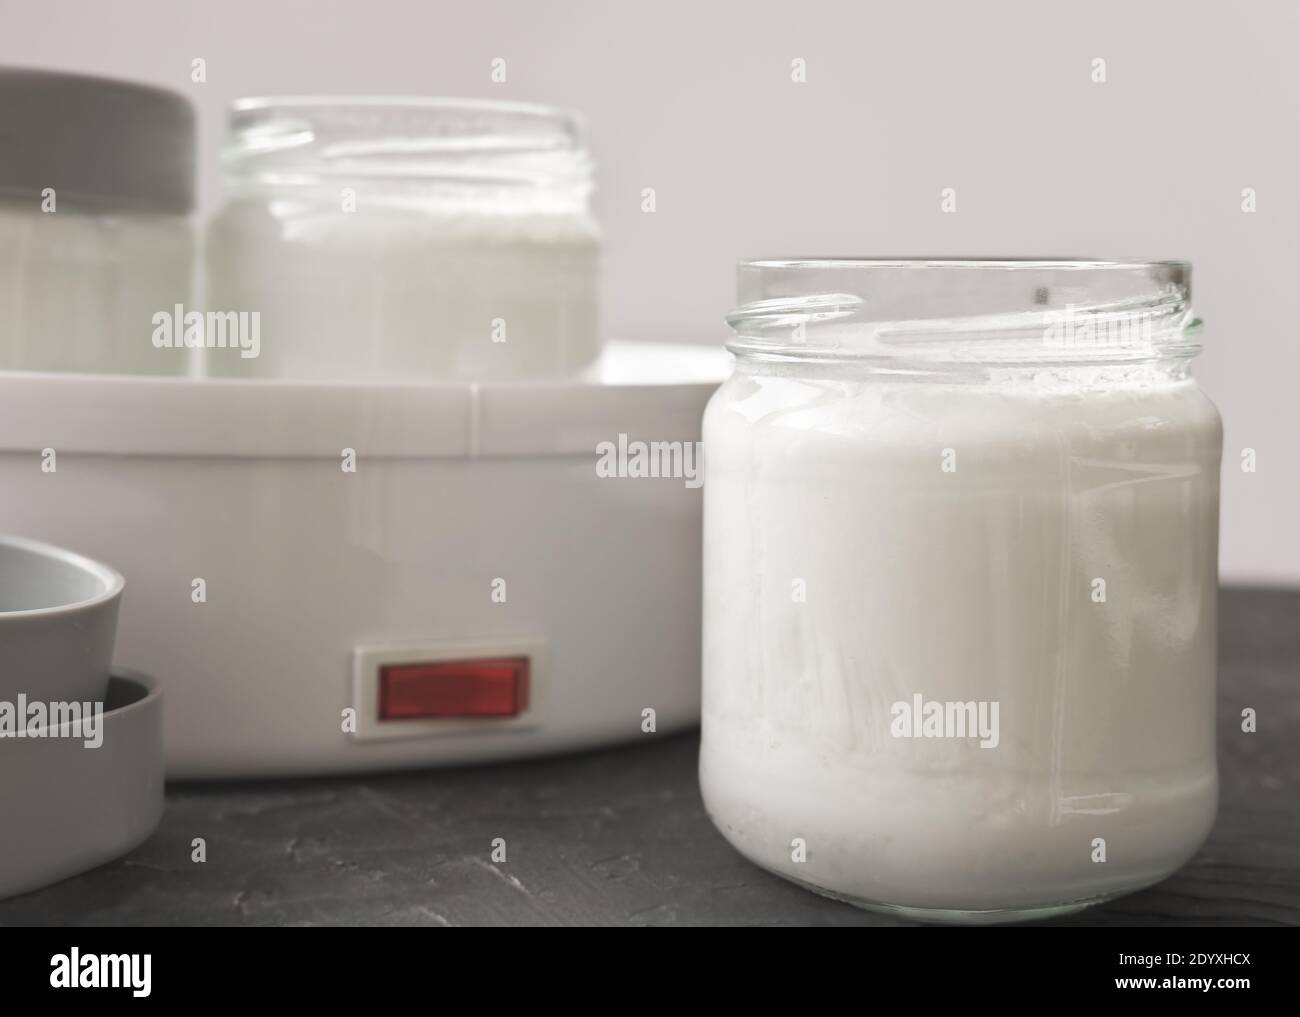 Hausgemachte Bio-Joghurt in Gläsern in der Nähe Joghurtmaschine.  Automatische Joghurt-Maschine fermentierte Milch zu Hause zu machen.  Joghurt oder Kefir Herstellung während Quarantäne-Konzept Stockfotografie -  Alamy